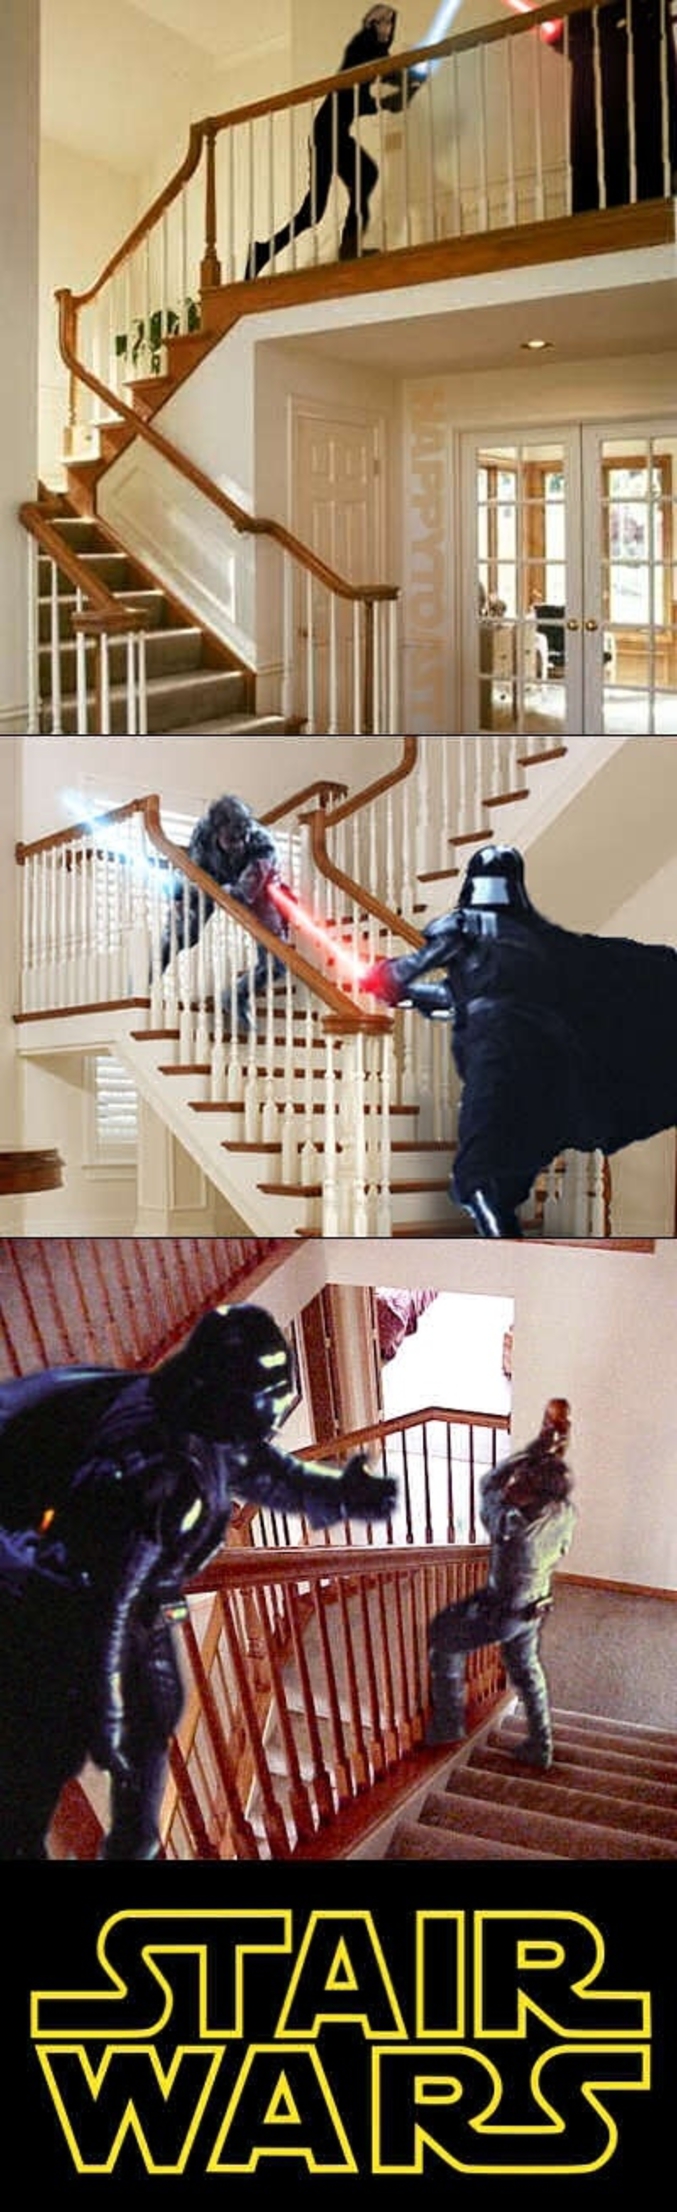 Des scènes des Star Wars dans les escaliers.